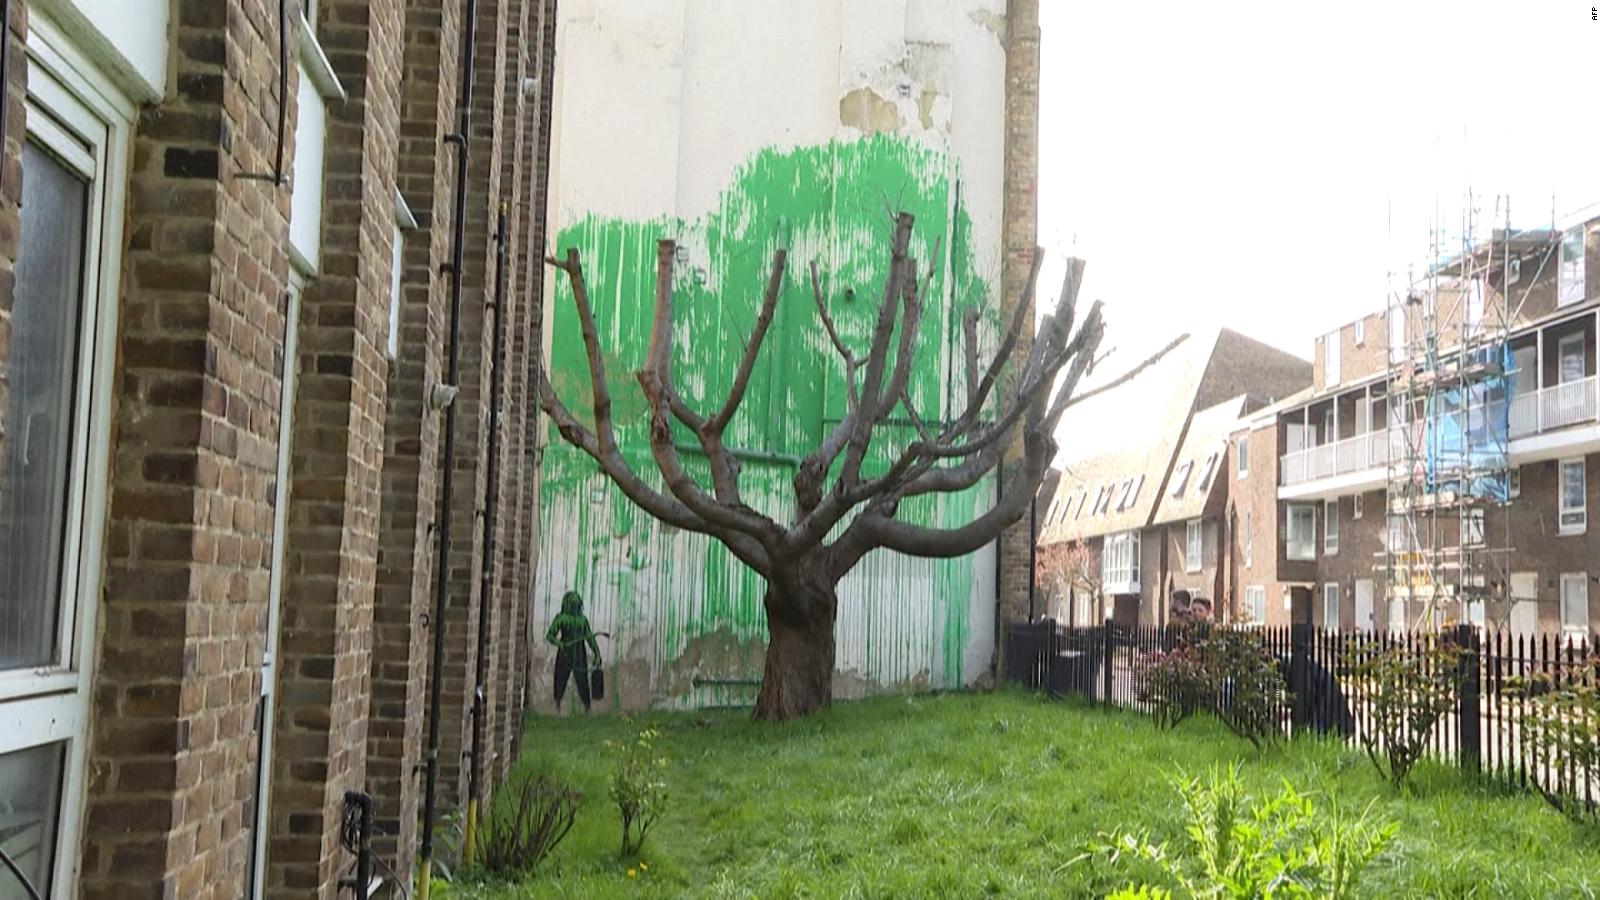 Así es el nuevo mural de Banksy en Londres: un árbol pintado | Video